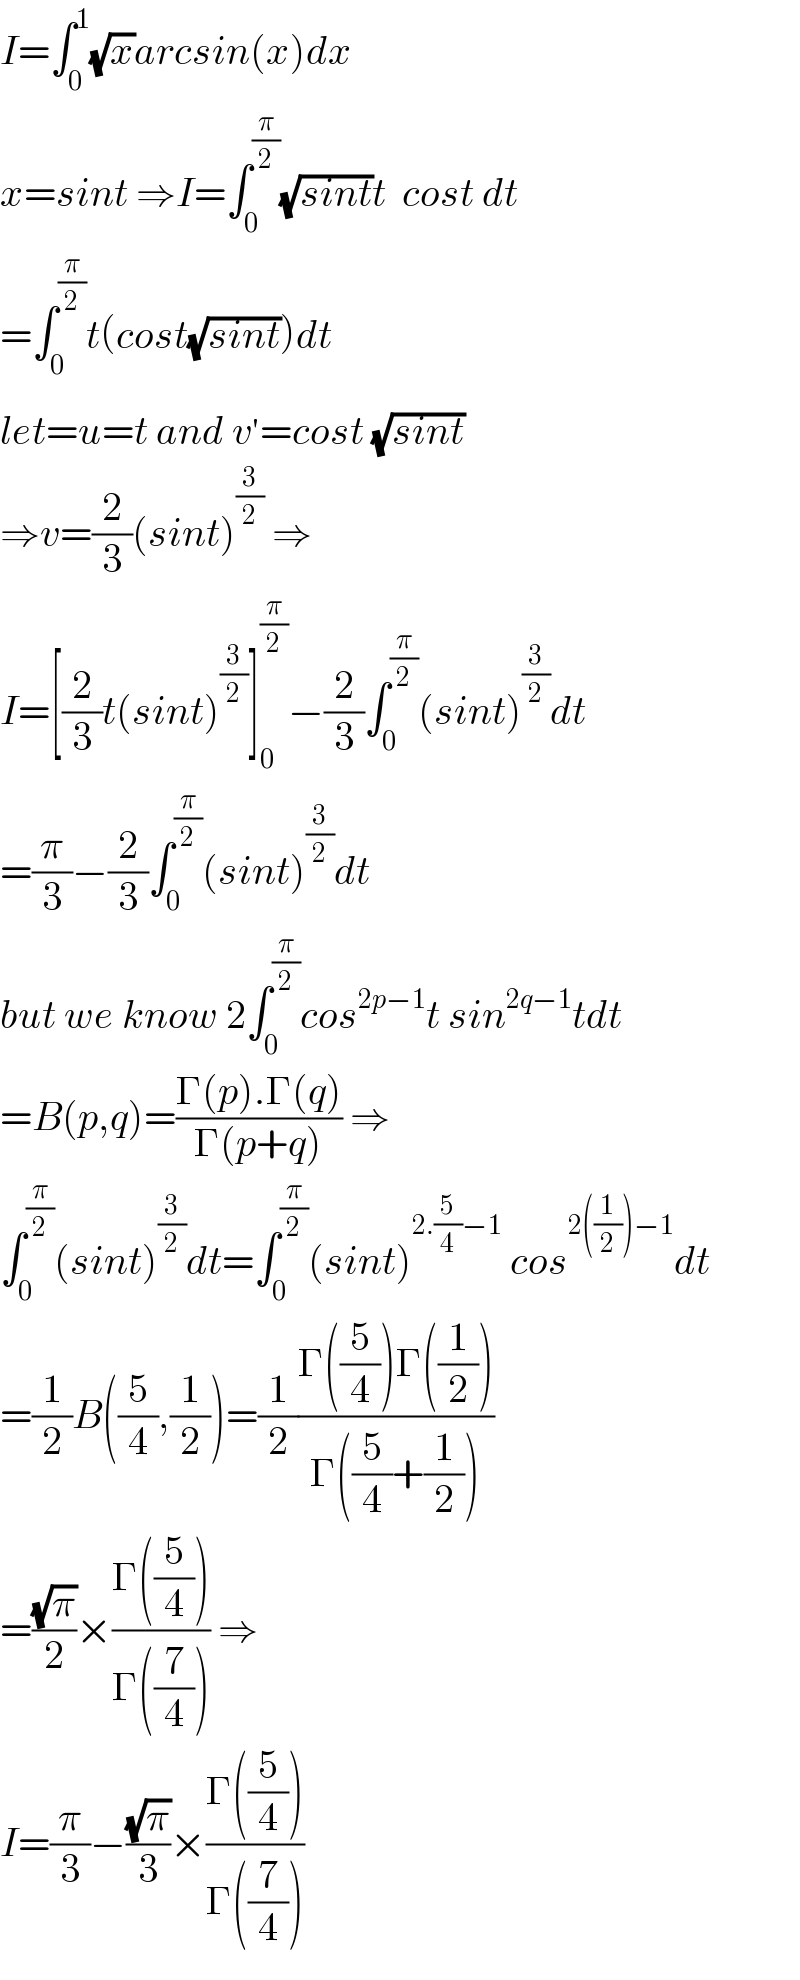 I=∫_0 ^1 (√x)arcsin(x)dx  x=sint ⇒I=∫_0 ^(π/2) (√(sint))t  cost dt  =∫_0 ^(π/2) t(cost(√(sint)))dt  let=u=t and v^′ =cost (√(sint))  ⇒v=(2/3)(sint)^(3/2)  ⇒  I=[(2/3)t(sint)^(3/2) ]_0 ^(π/2) −(2/3)∫_0 ^(π/2) (sint)^(3/2) dt  =(π/3)−(2/3)∫_0 ^(π/2) (sint)^(3/2) dt  but we know 2∫_0 ^(π/2) cos^(2p−1) t sin^(2q−1) tdt  =B(p,q)=((Γ(p).Γ(q))/(Γ(p+q))) ⇒  ∫_0 ^(π/2) (sint)^(3/2) dt=∫_0 ^(π/2) (sint)^(2.(5/4)−1)  cos^(2((1/2))−1) dt  =(1/2)B((5/4),(1/2))=(1/2)((Γ((5/4))Γ((1/2)))/(Γ((5/4)+(1/2))))  =((√π)/2)×((Γ((5/4)))/(Γ((7/4)))) ⇒  I=(π/3)−((√π)/3)×((Γ((5/4)))/(Γ((7/4))))  